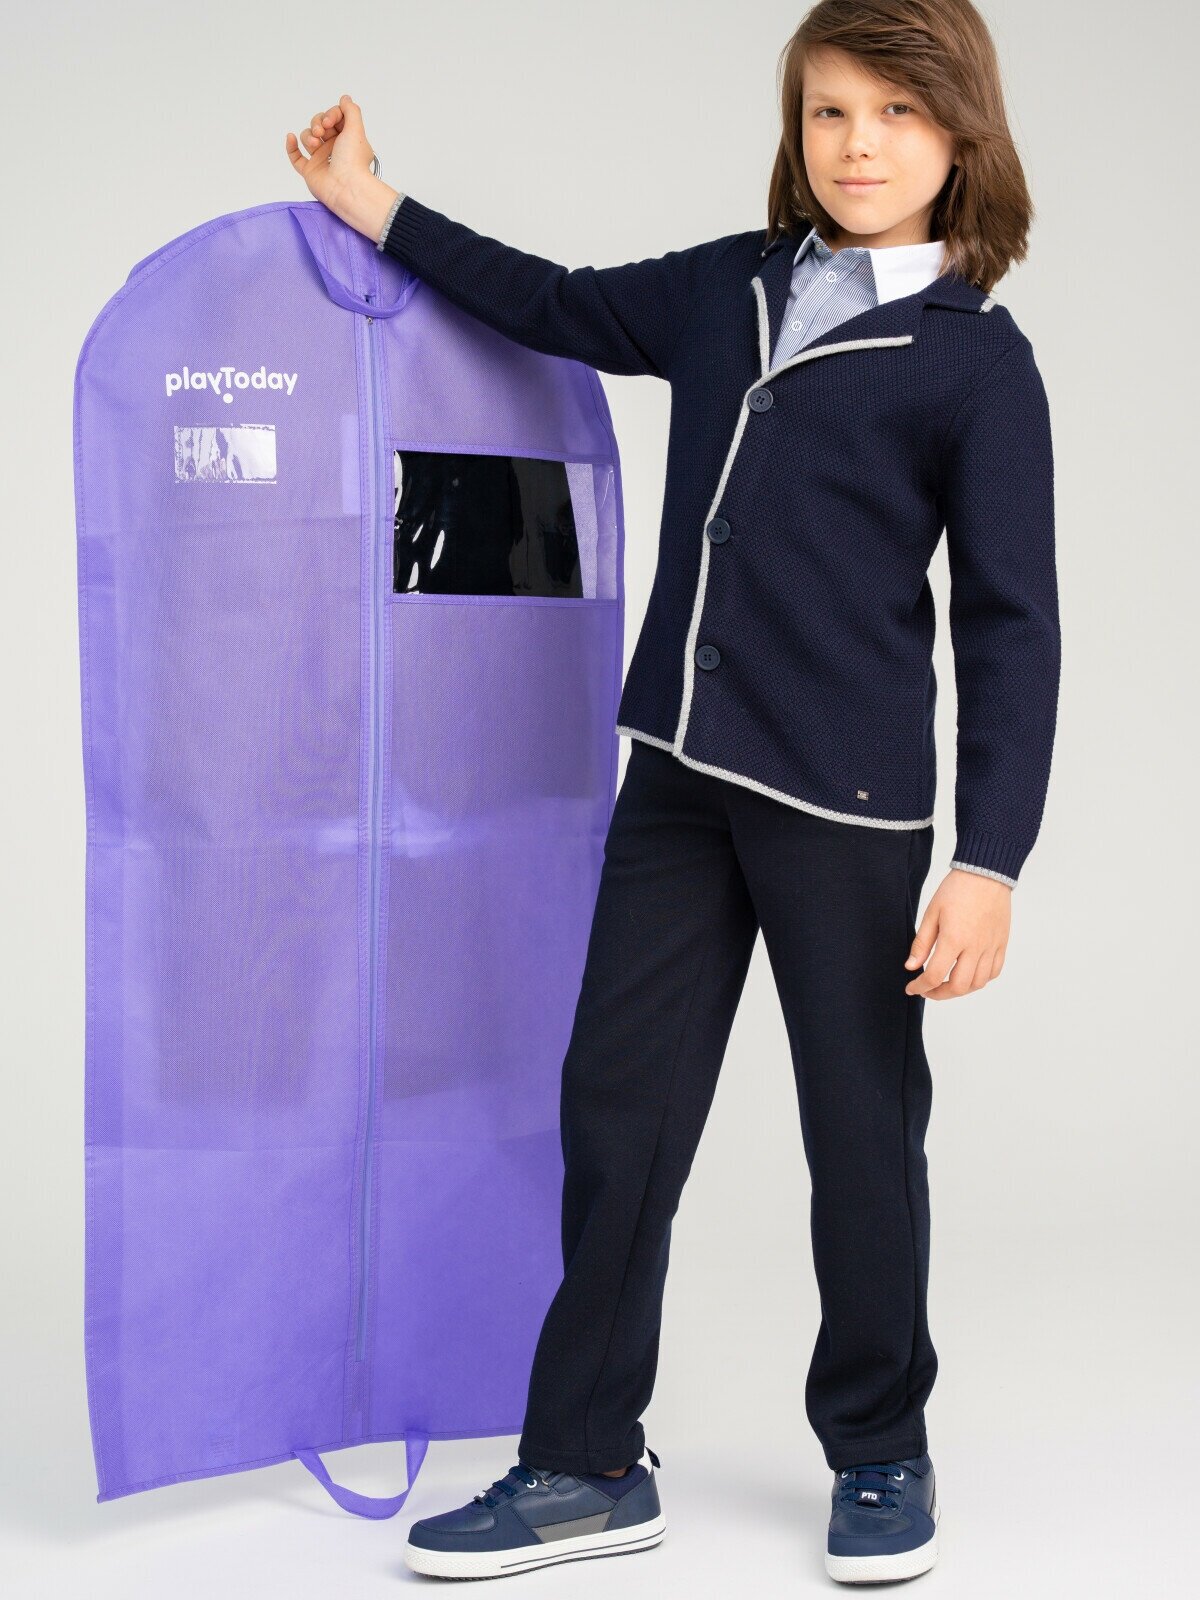 Чехол для одежды 130 см PlayToday, размер 130*60 см, фиолетовый